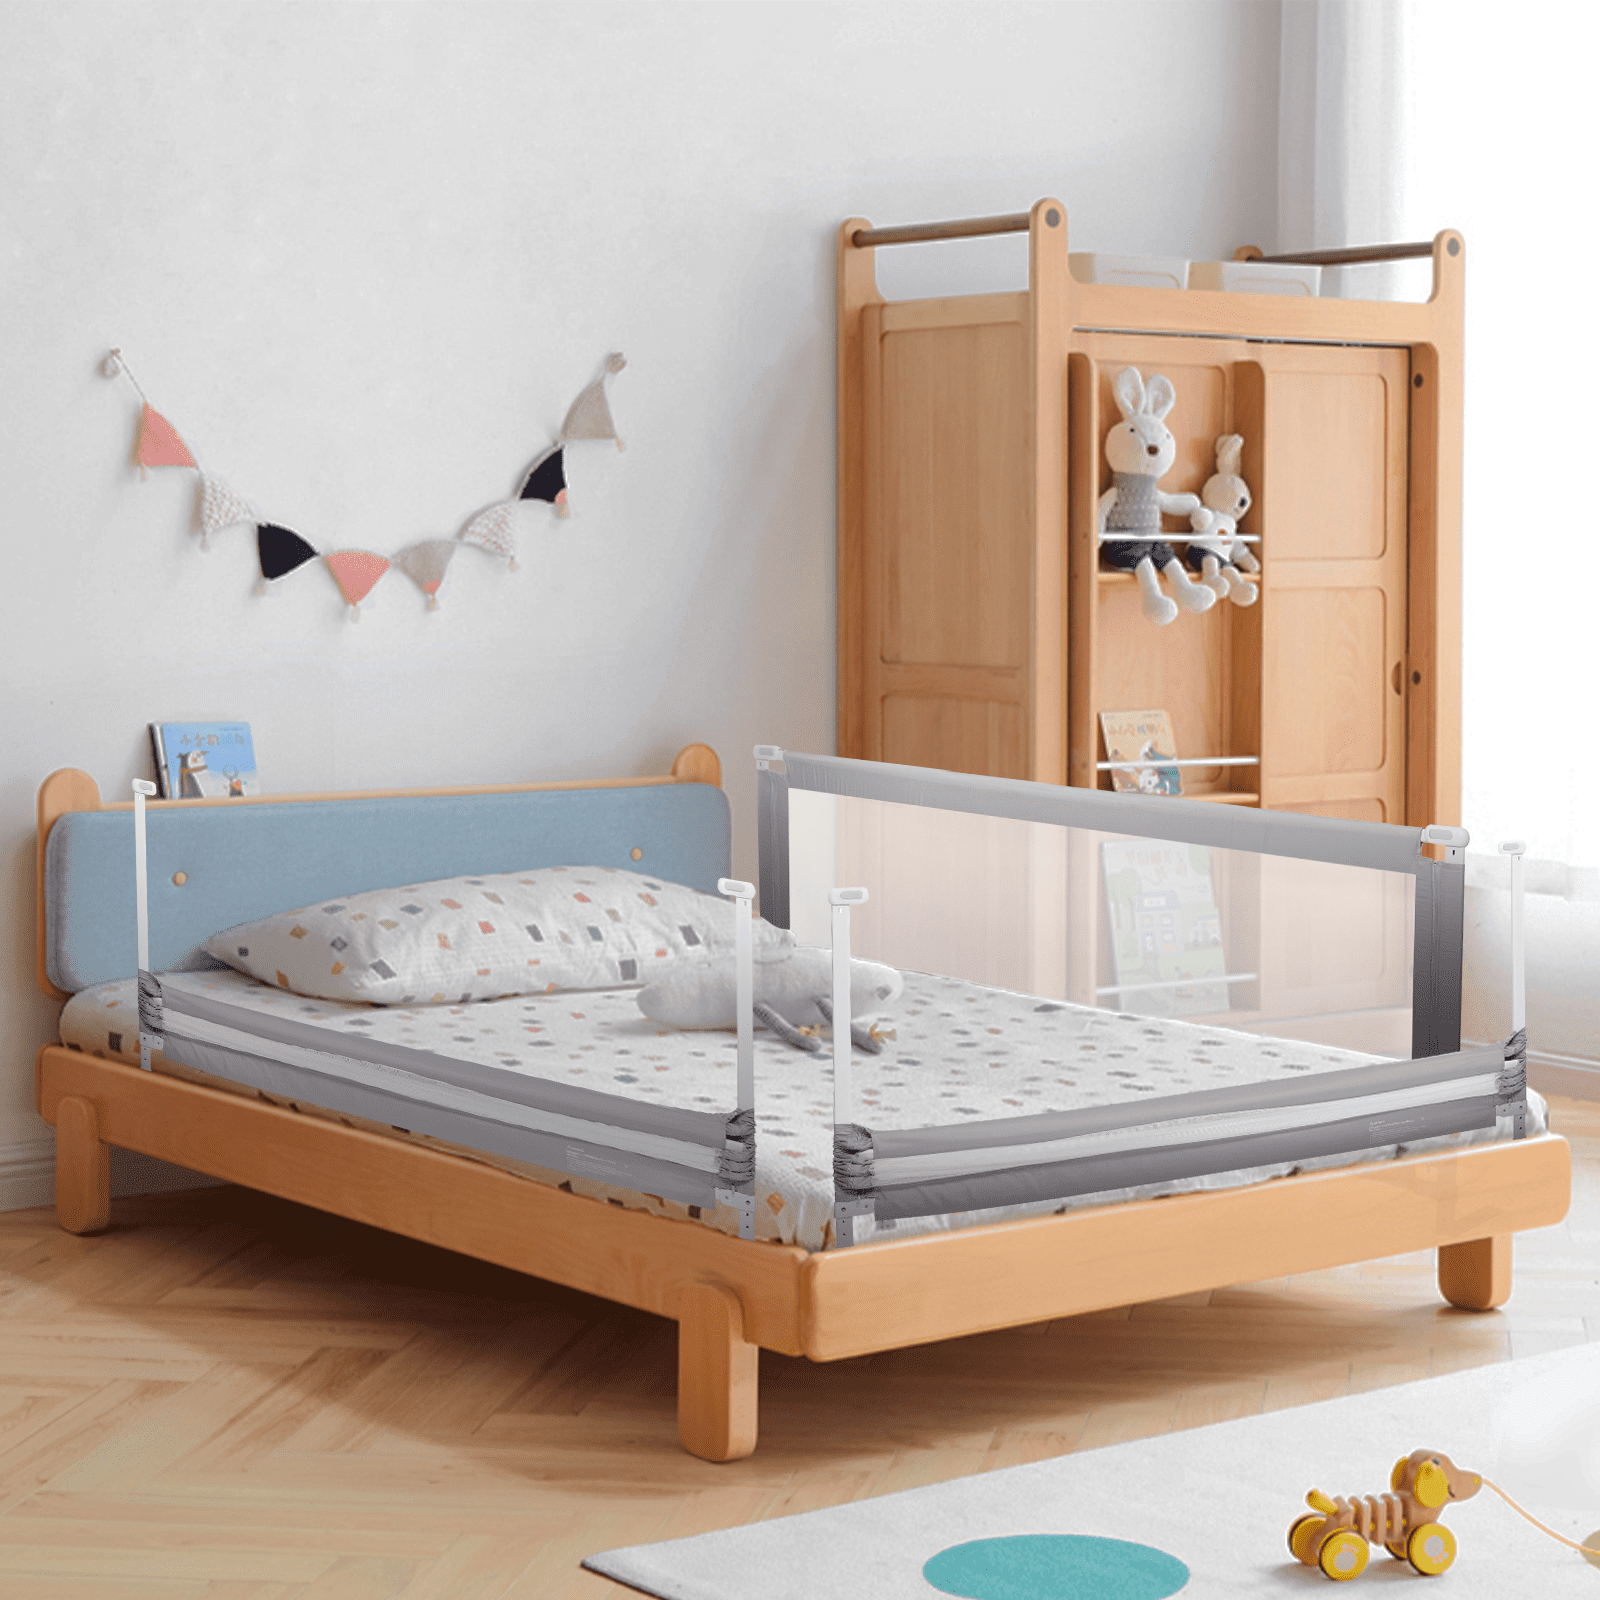 Tooca Toddler Bed Rails 71 Long, Bed Frame Side Rails